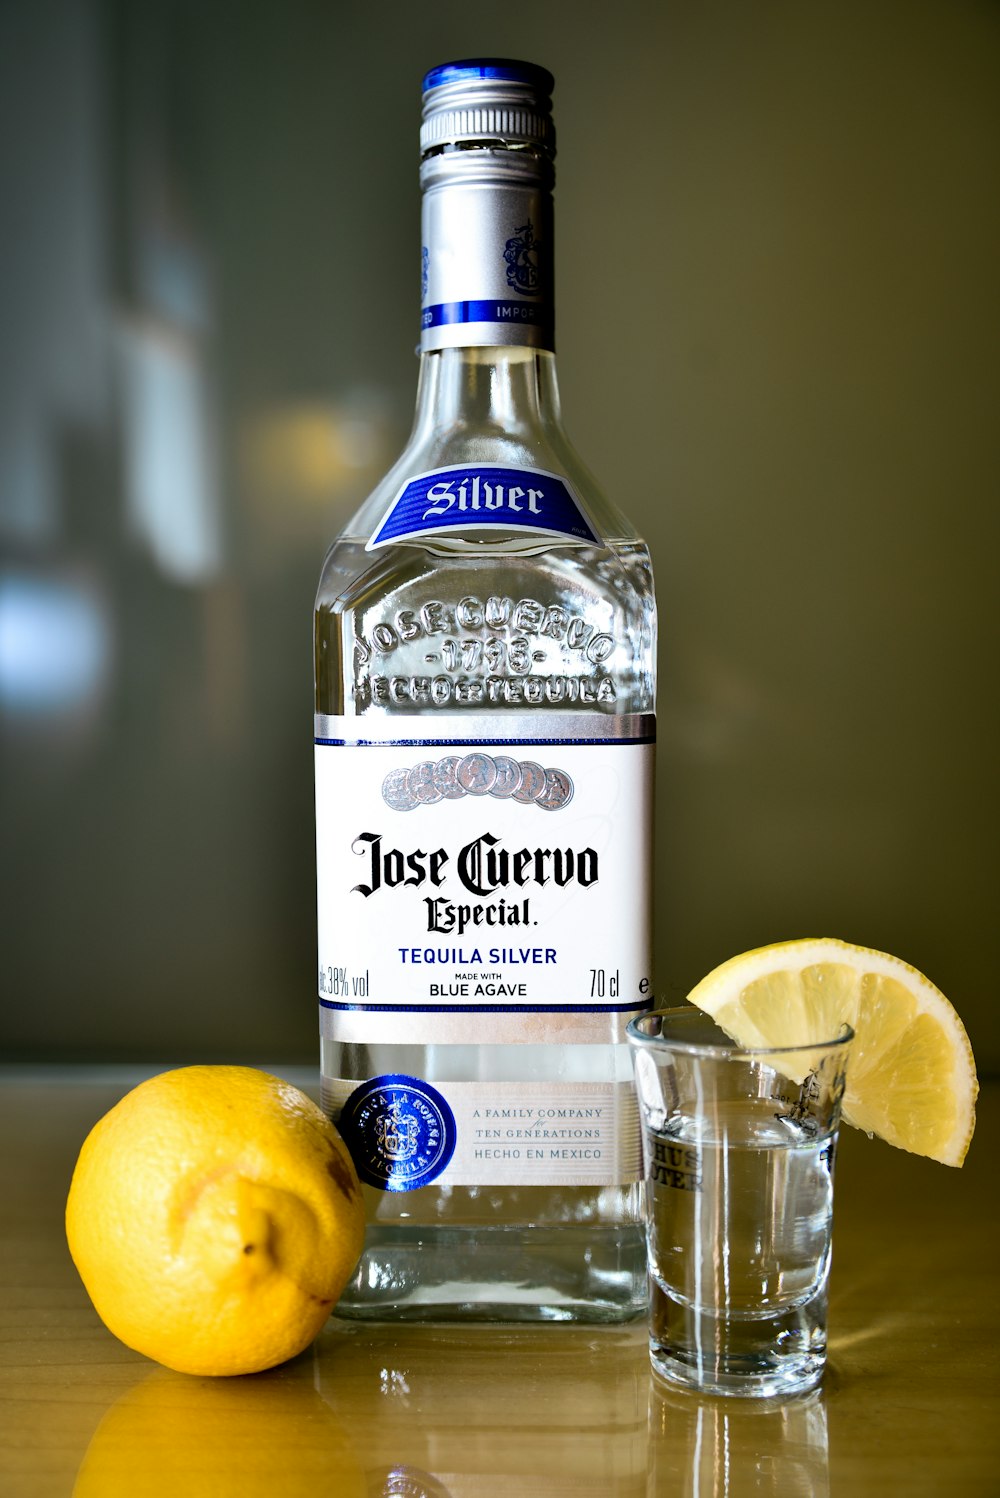 foto ravvicinata della bottiglia d'argento sigillata di tequila Jose Cuervo